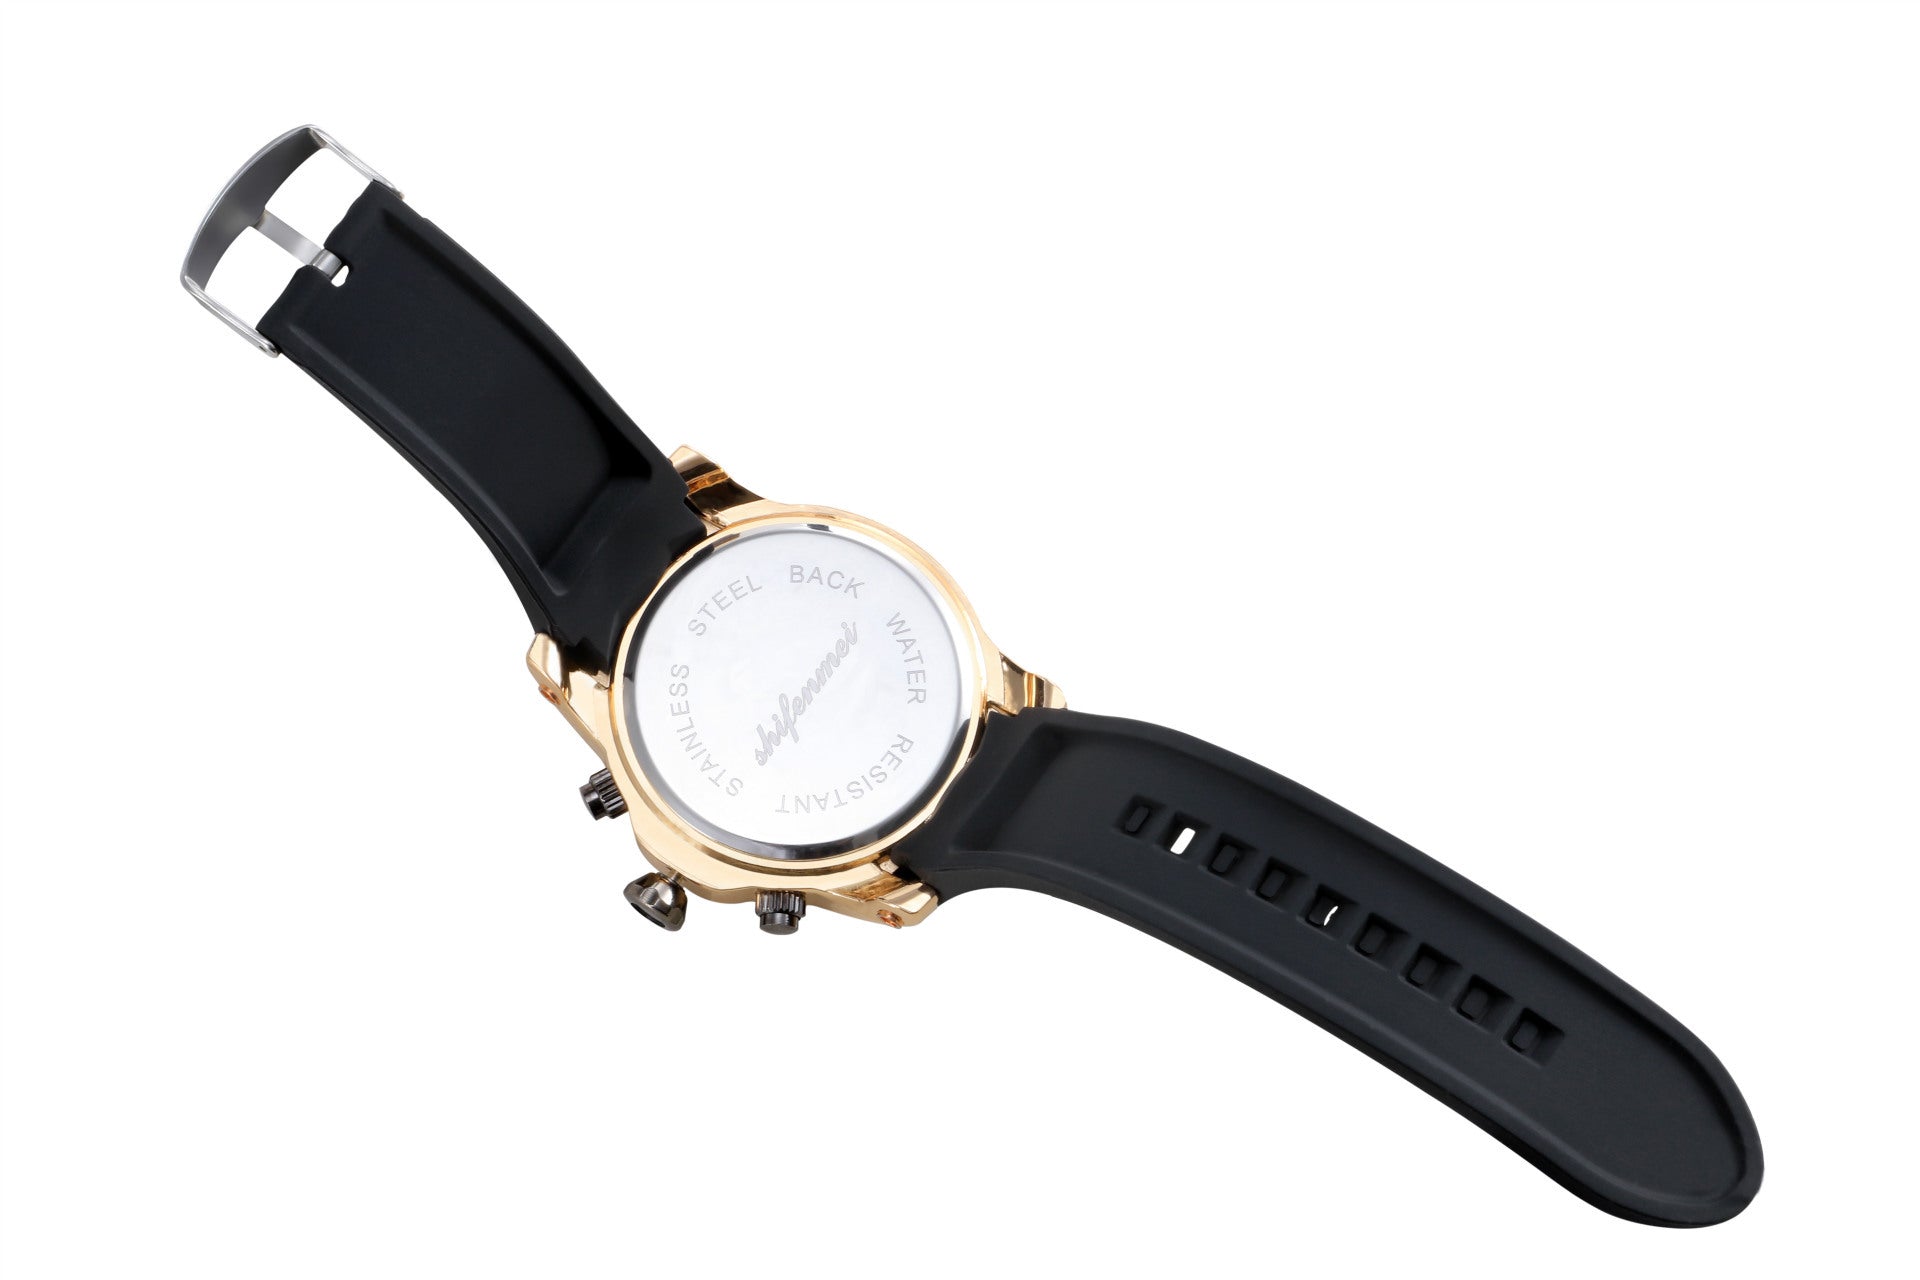 Large dial men's quartz watch